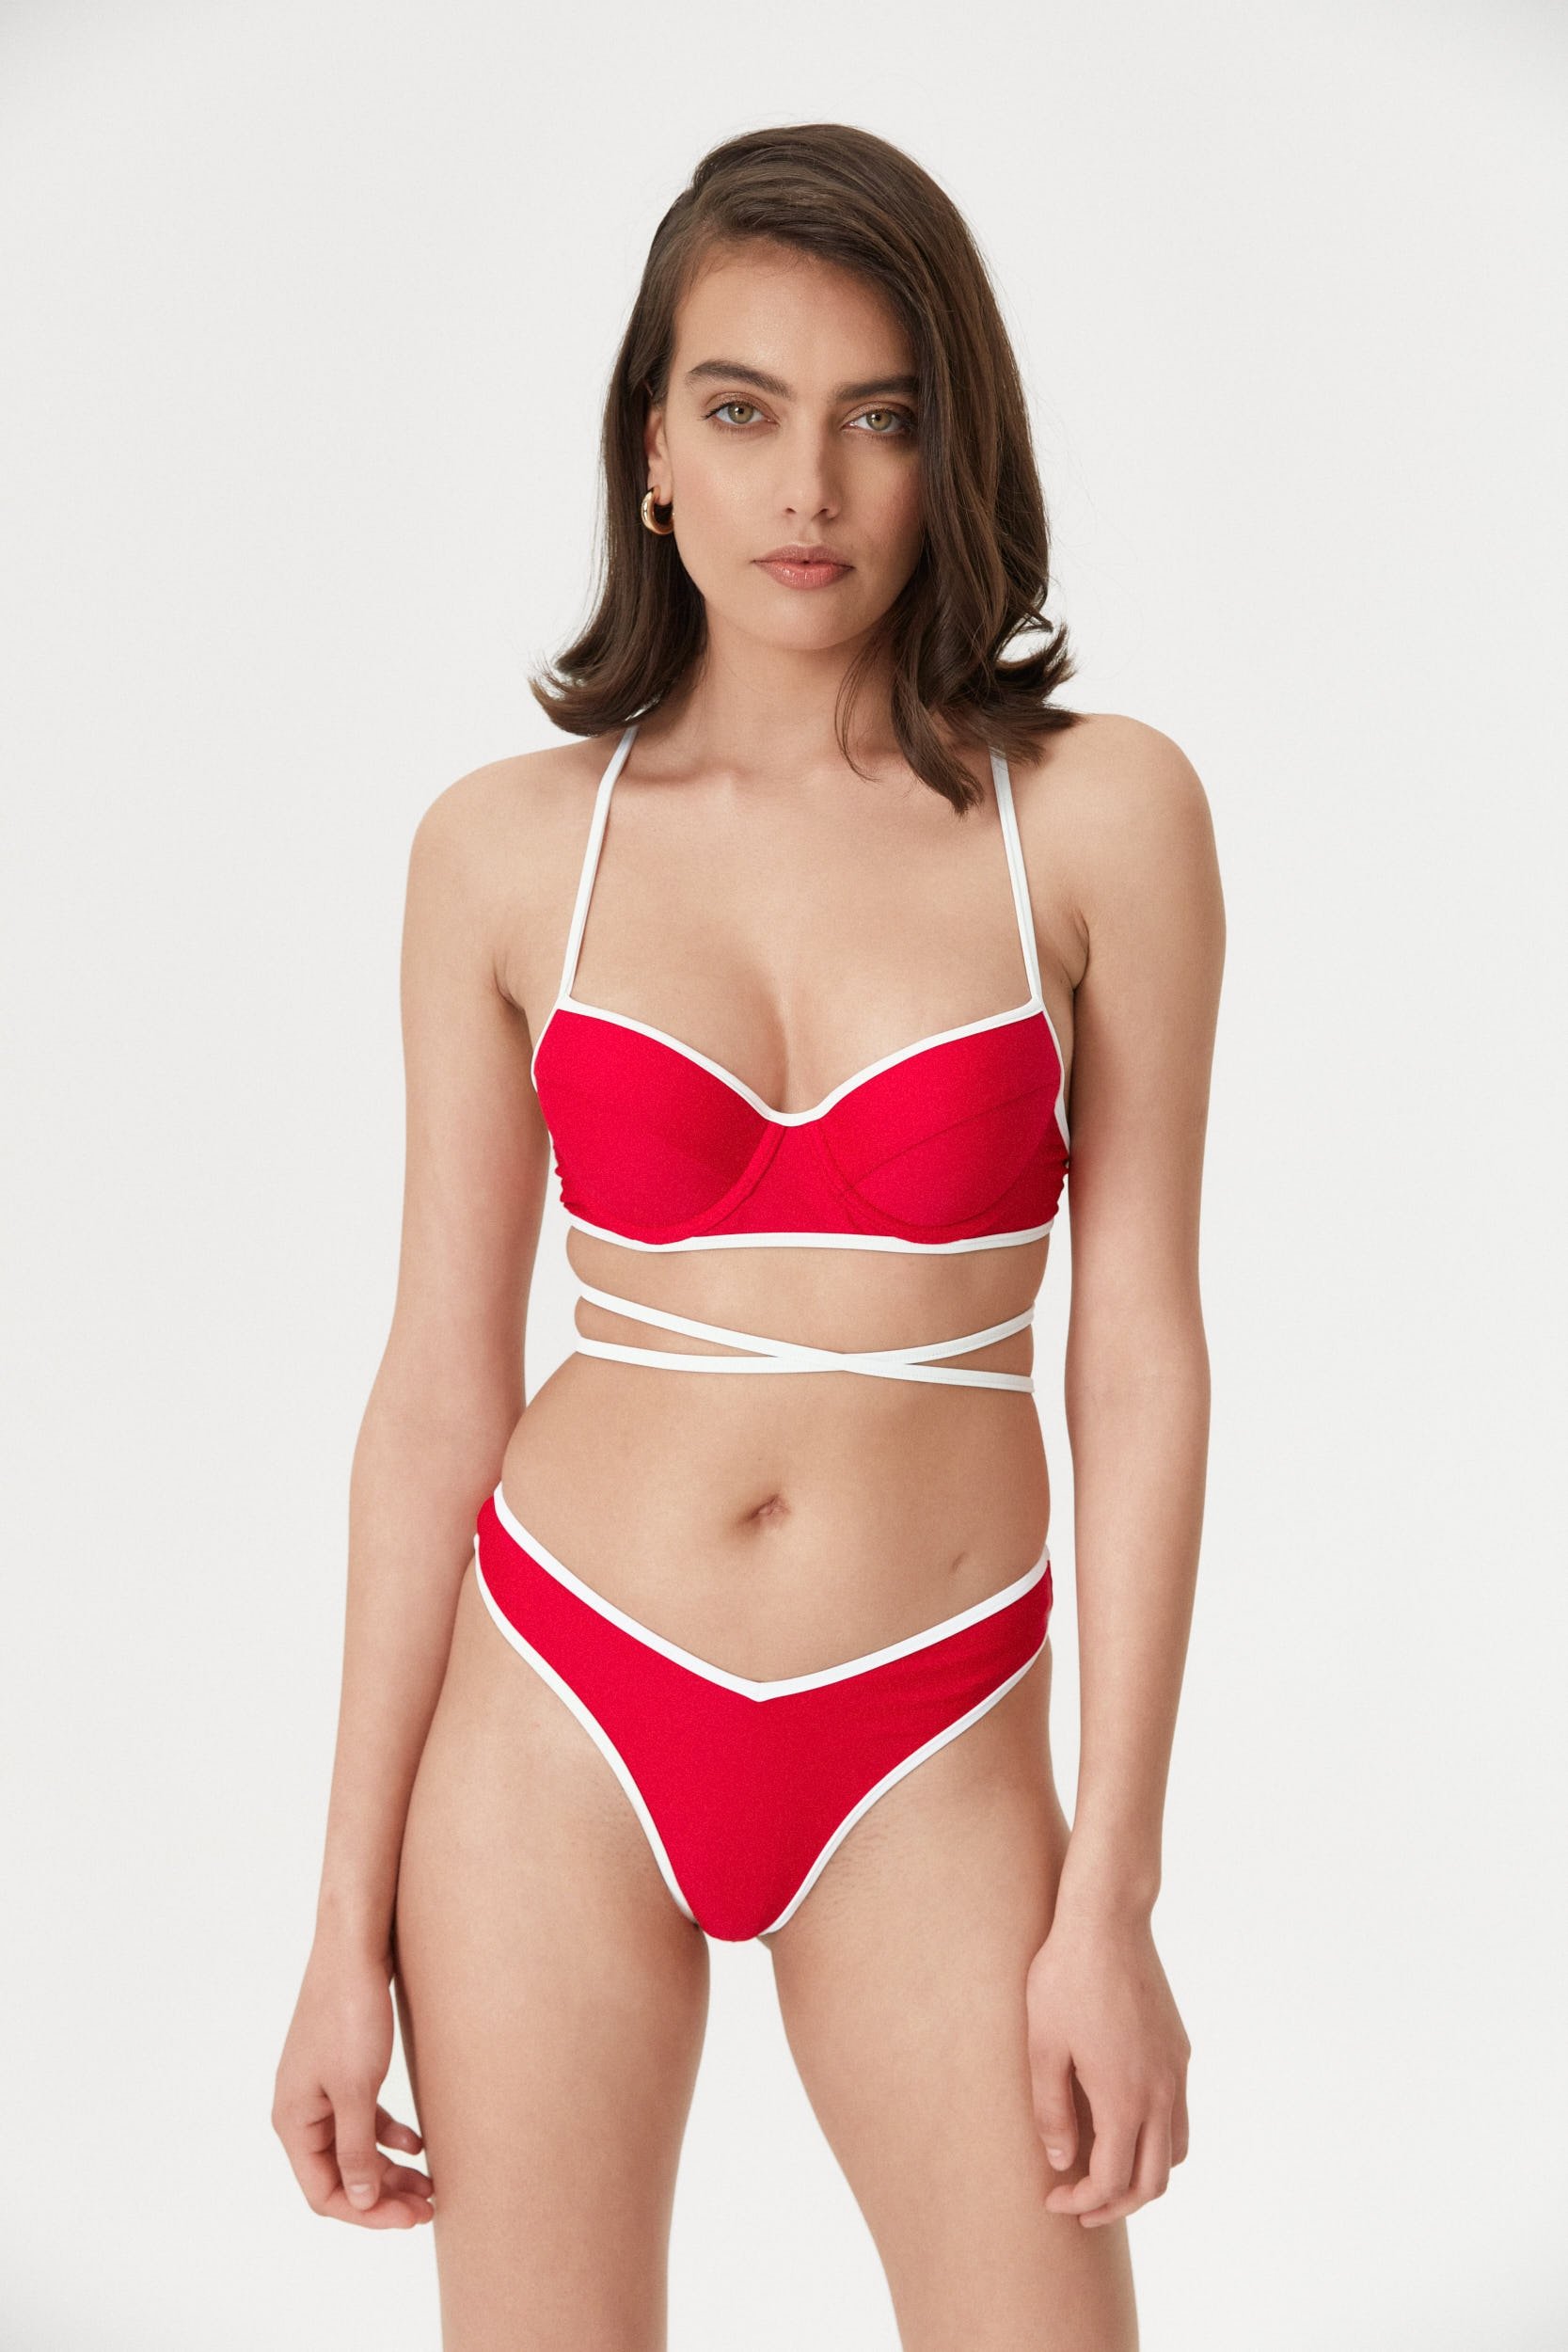 Red Two-Tone V-Shape Bikini